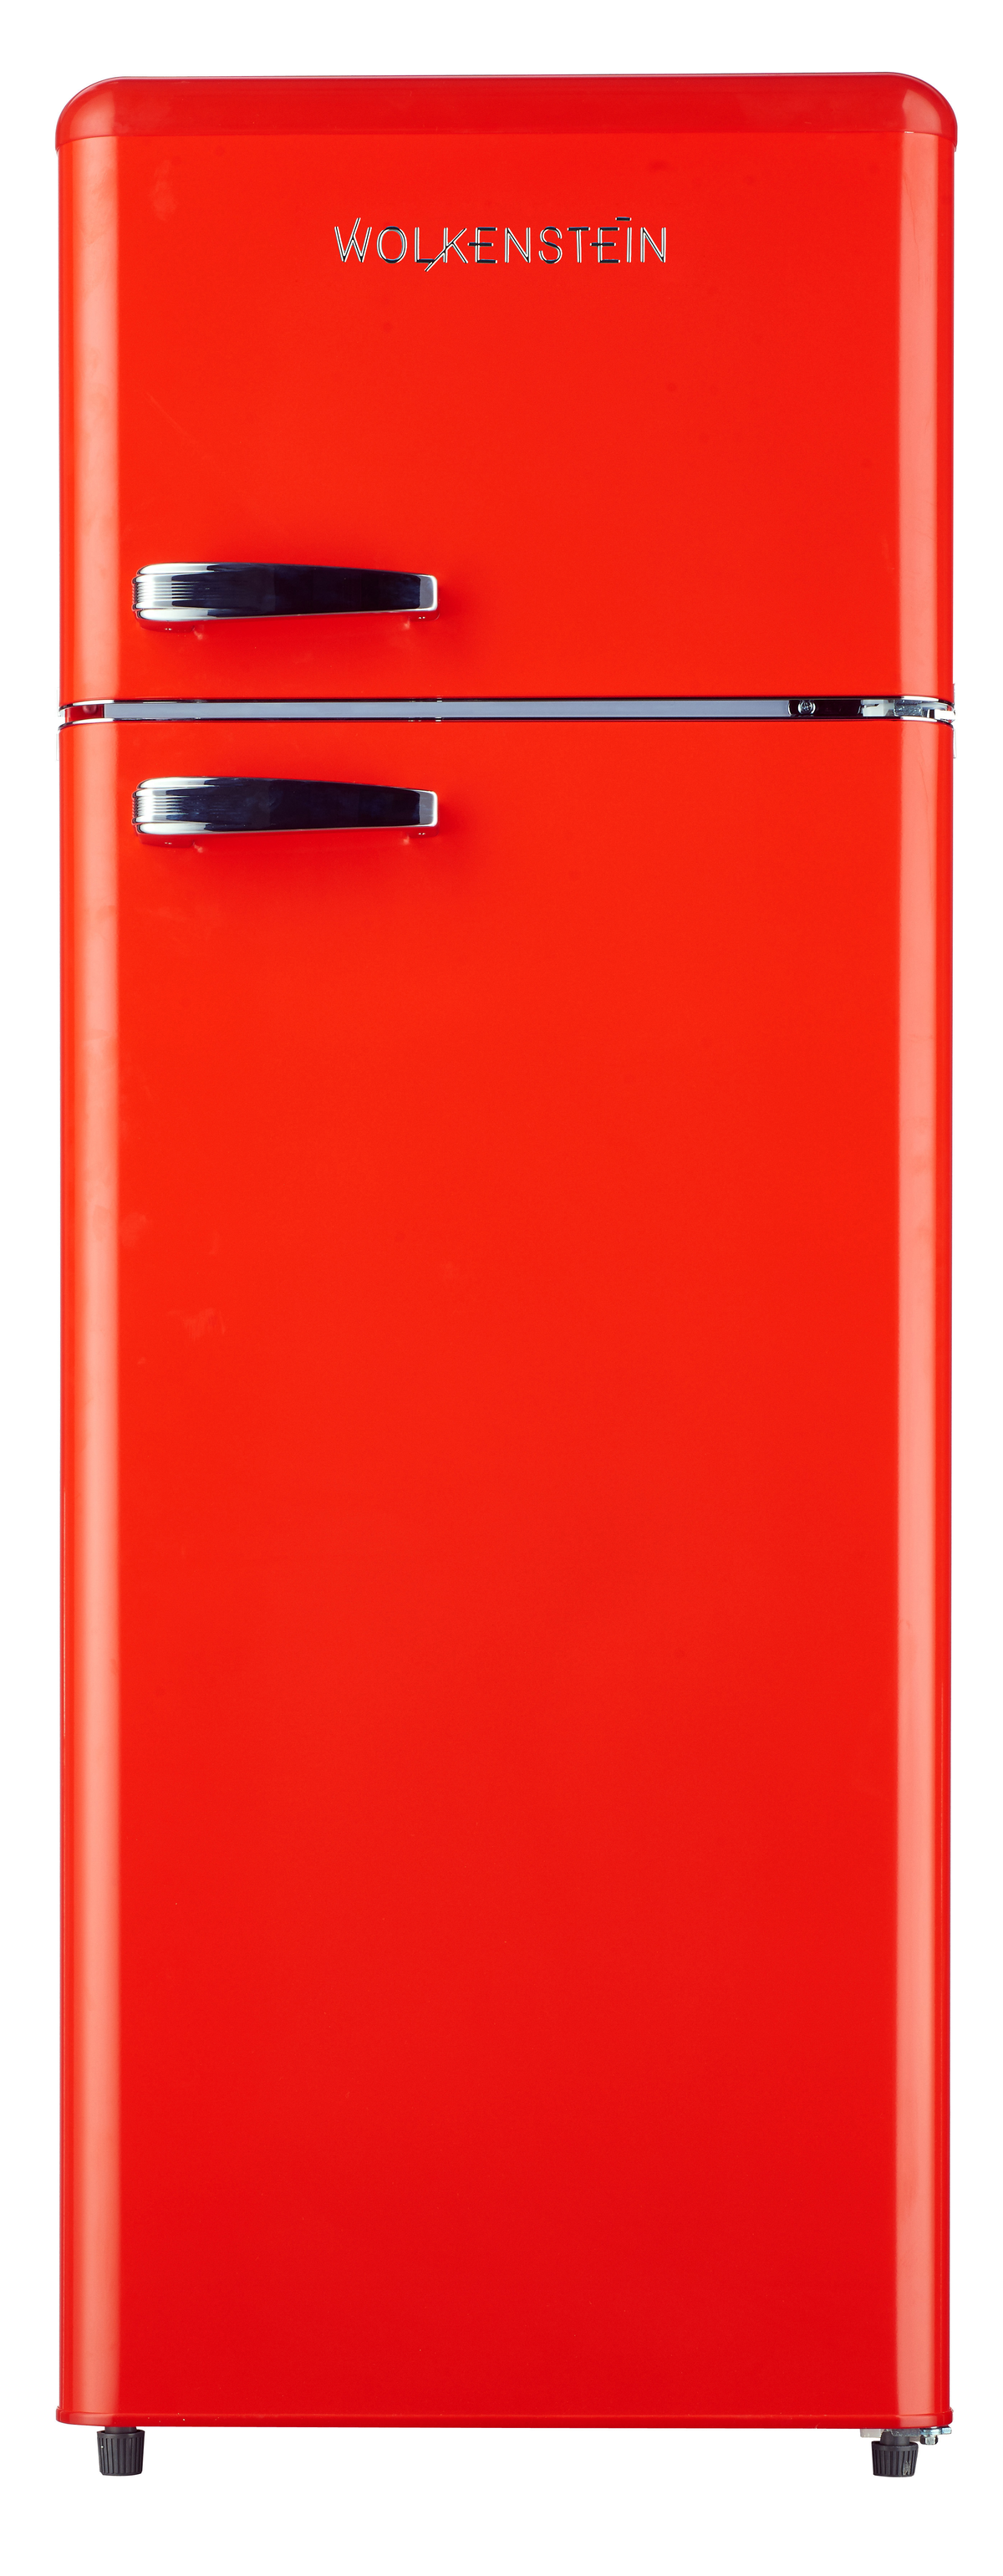 R WOLKENSTEIN Rot) hoch, 1456 (E, 174 Kühlgefrierkombination mm kWh, GK212.4 RT